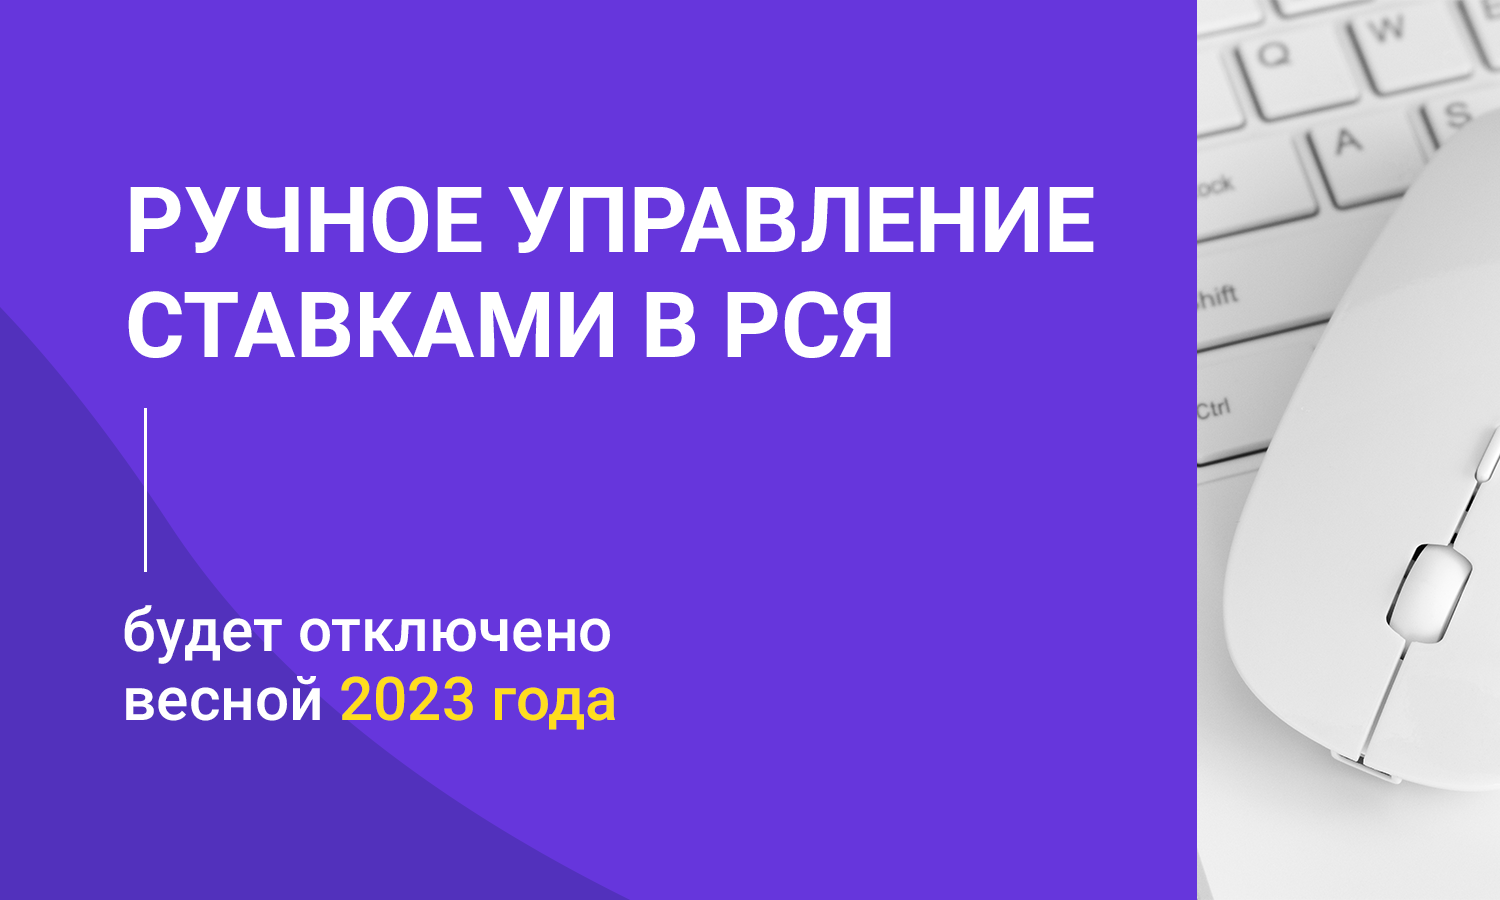 Ручное управление ставками в РСЯ будет отключено весной 2023 года